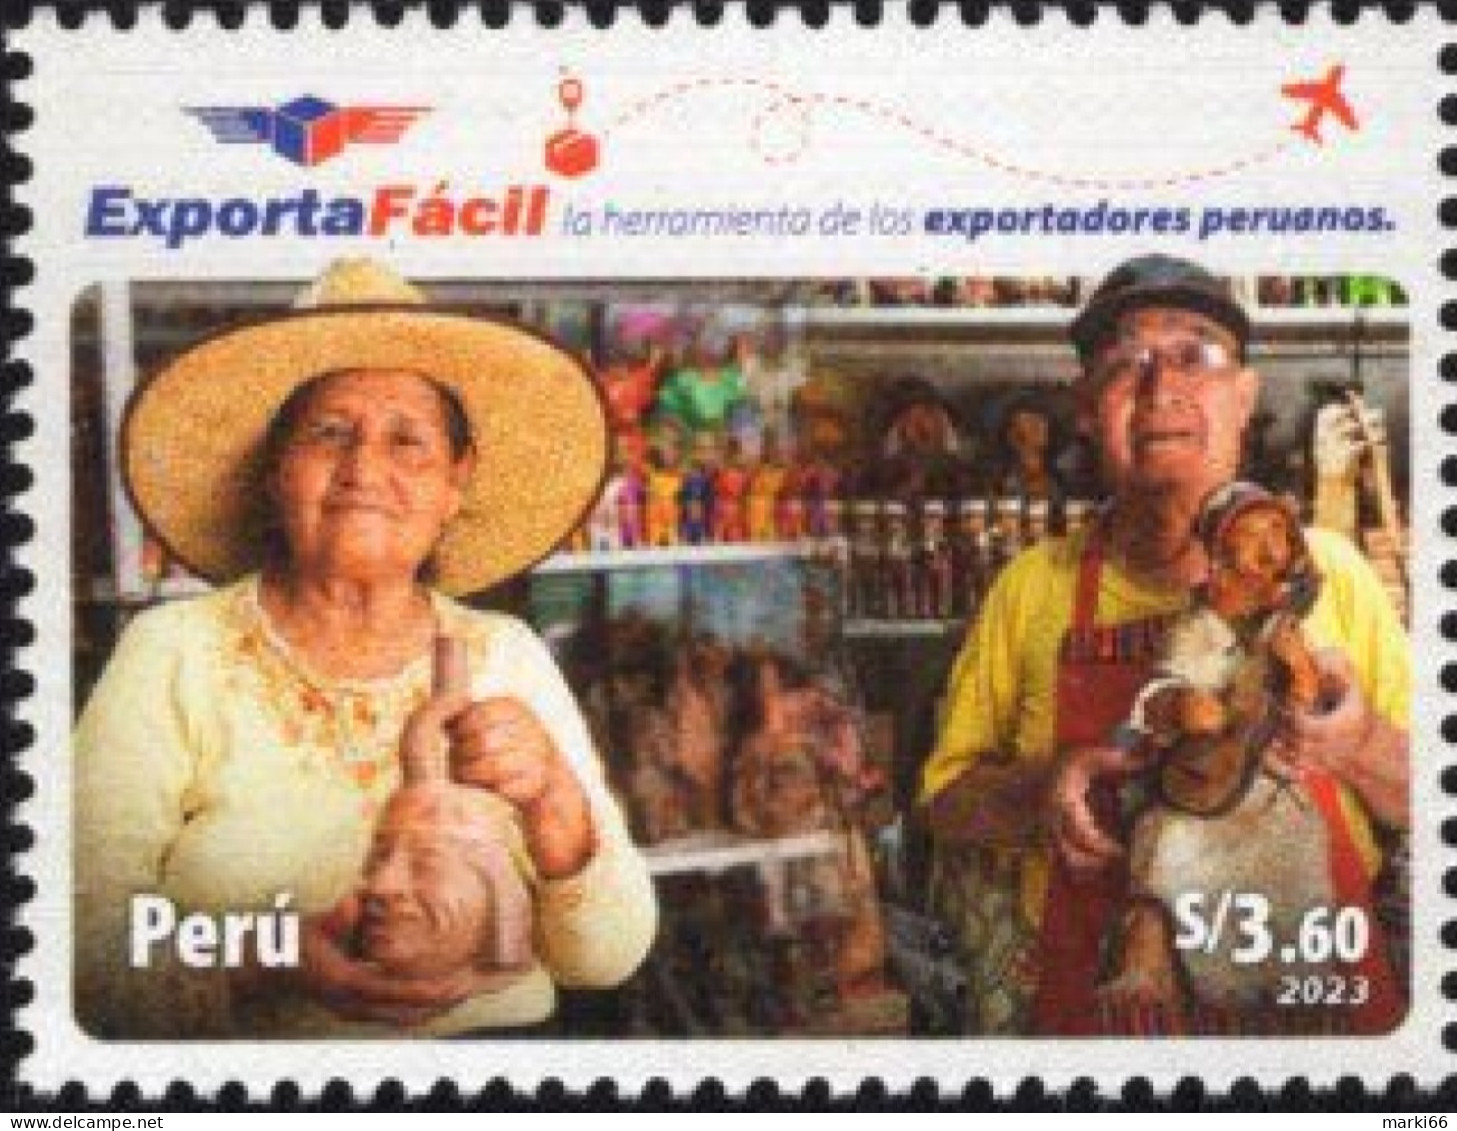 Peru - 2023 - Peruvian Export - Mint Stamp - Perù